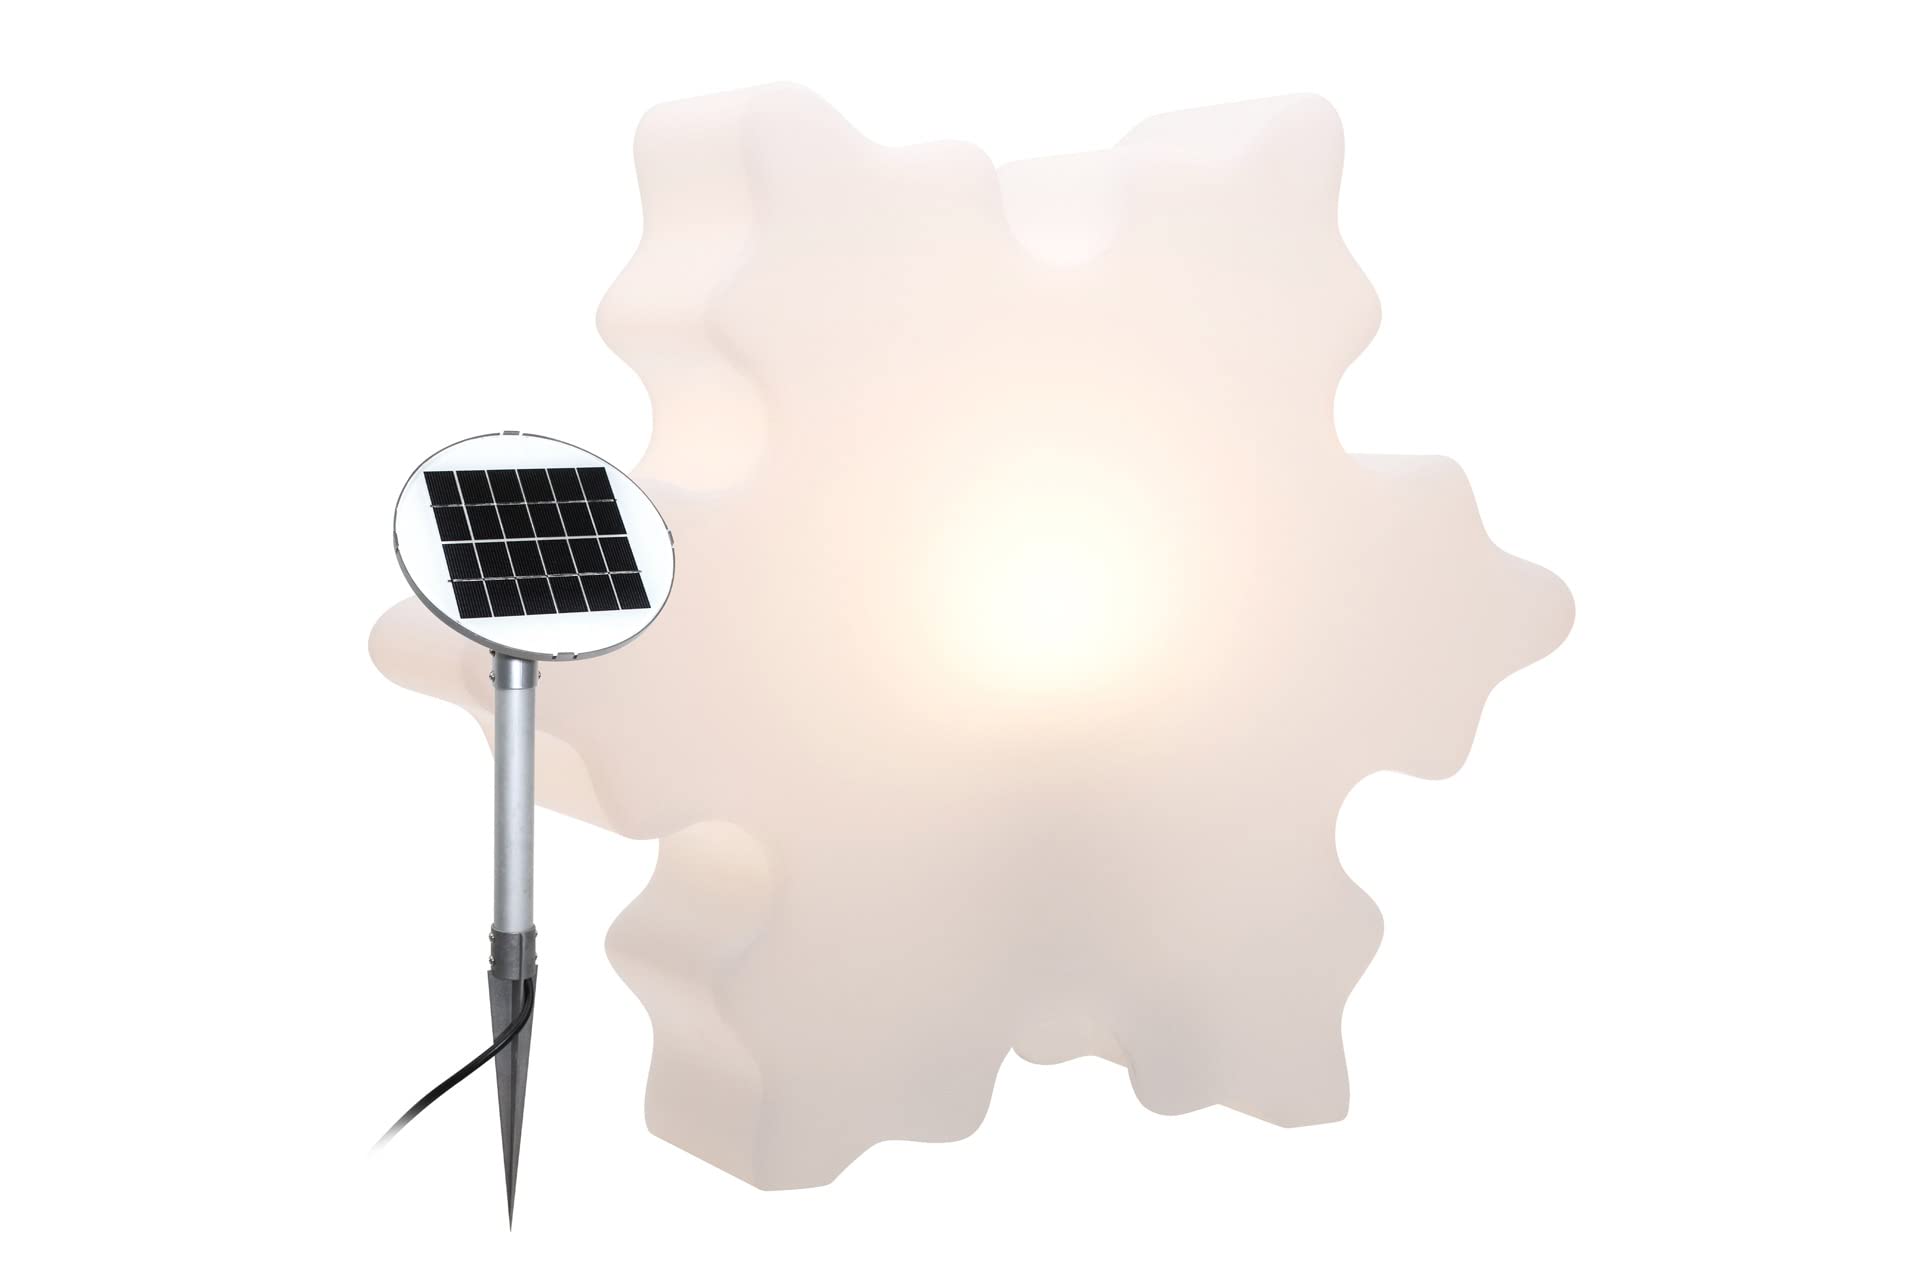 8 seasons design Shining Crystal Solar LED Schneeflocke (Ø 60 cm, weiß) inkl. Solarmodul und LED-Leuchtmittel in warmweiß, Tischlampe, Deko Winter beleuchtet, Stimmungslicht, für innen & außen